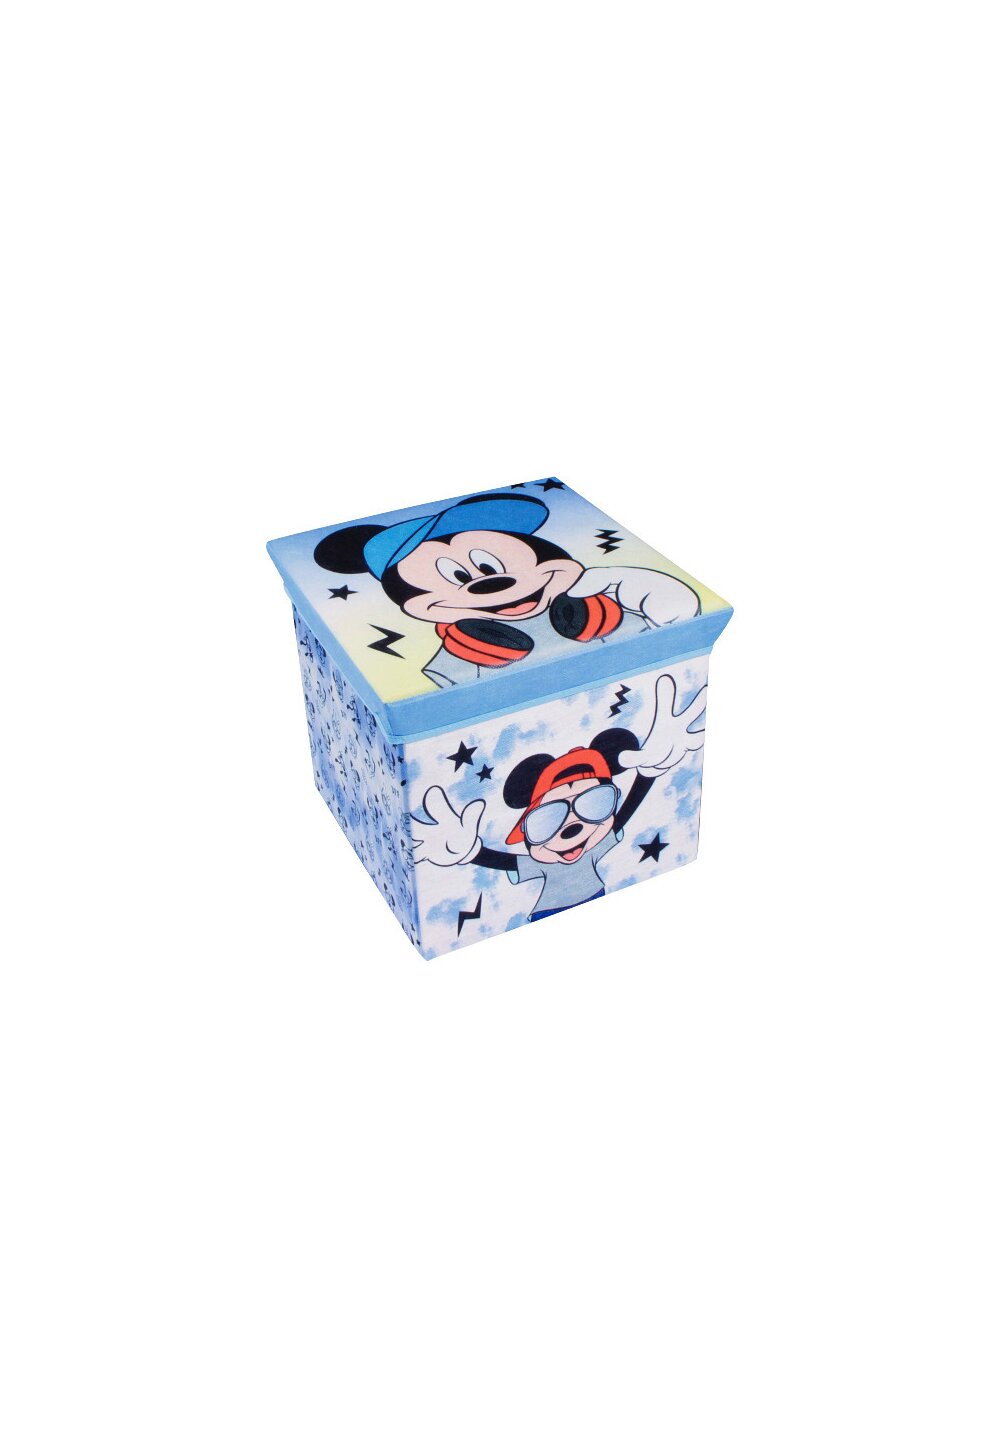 Cutie depozitare, Mickey Mouse, albastra cu stelute DISNEY